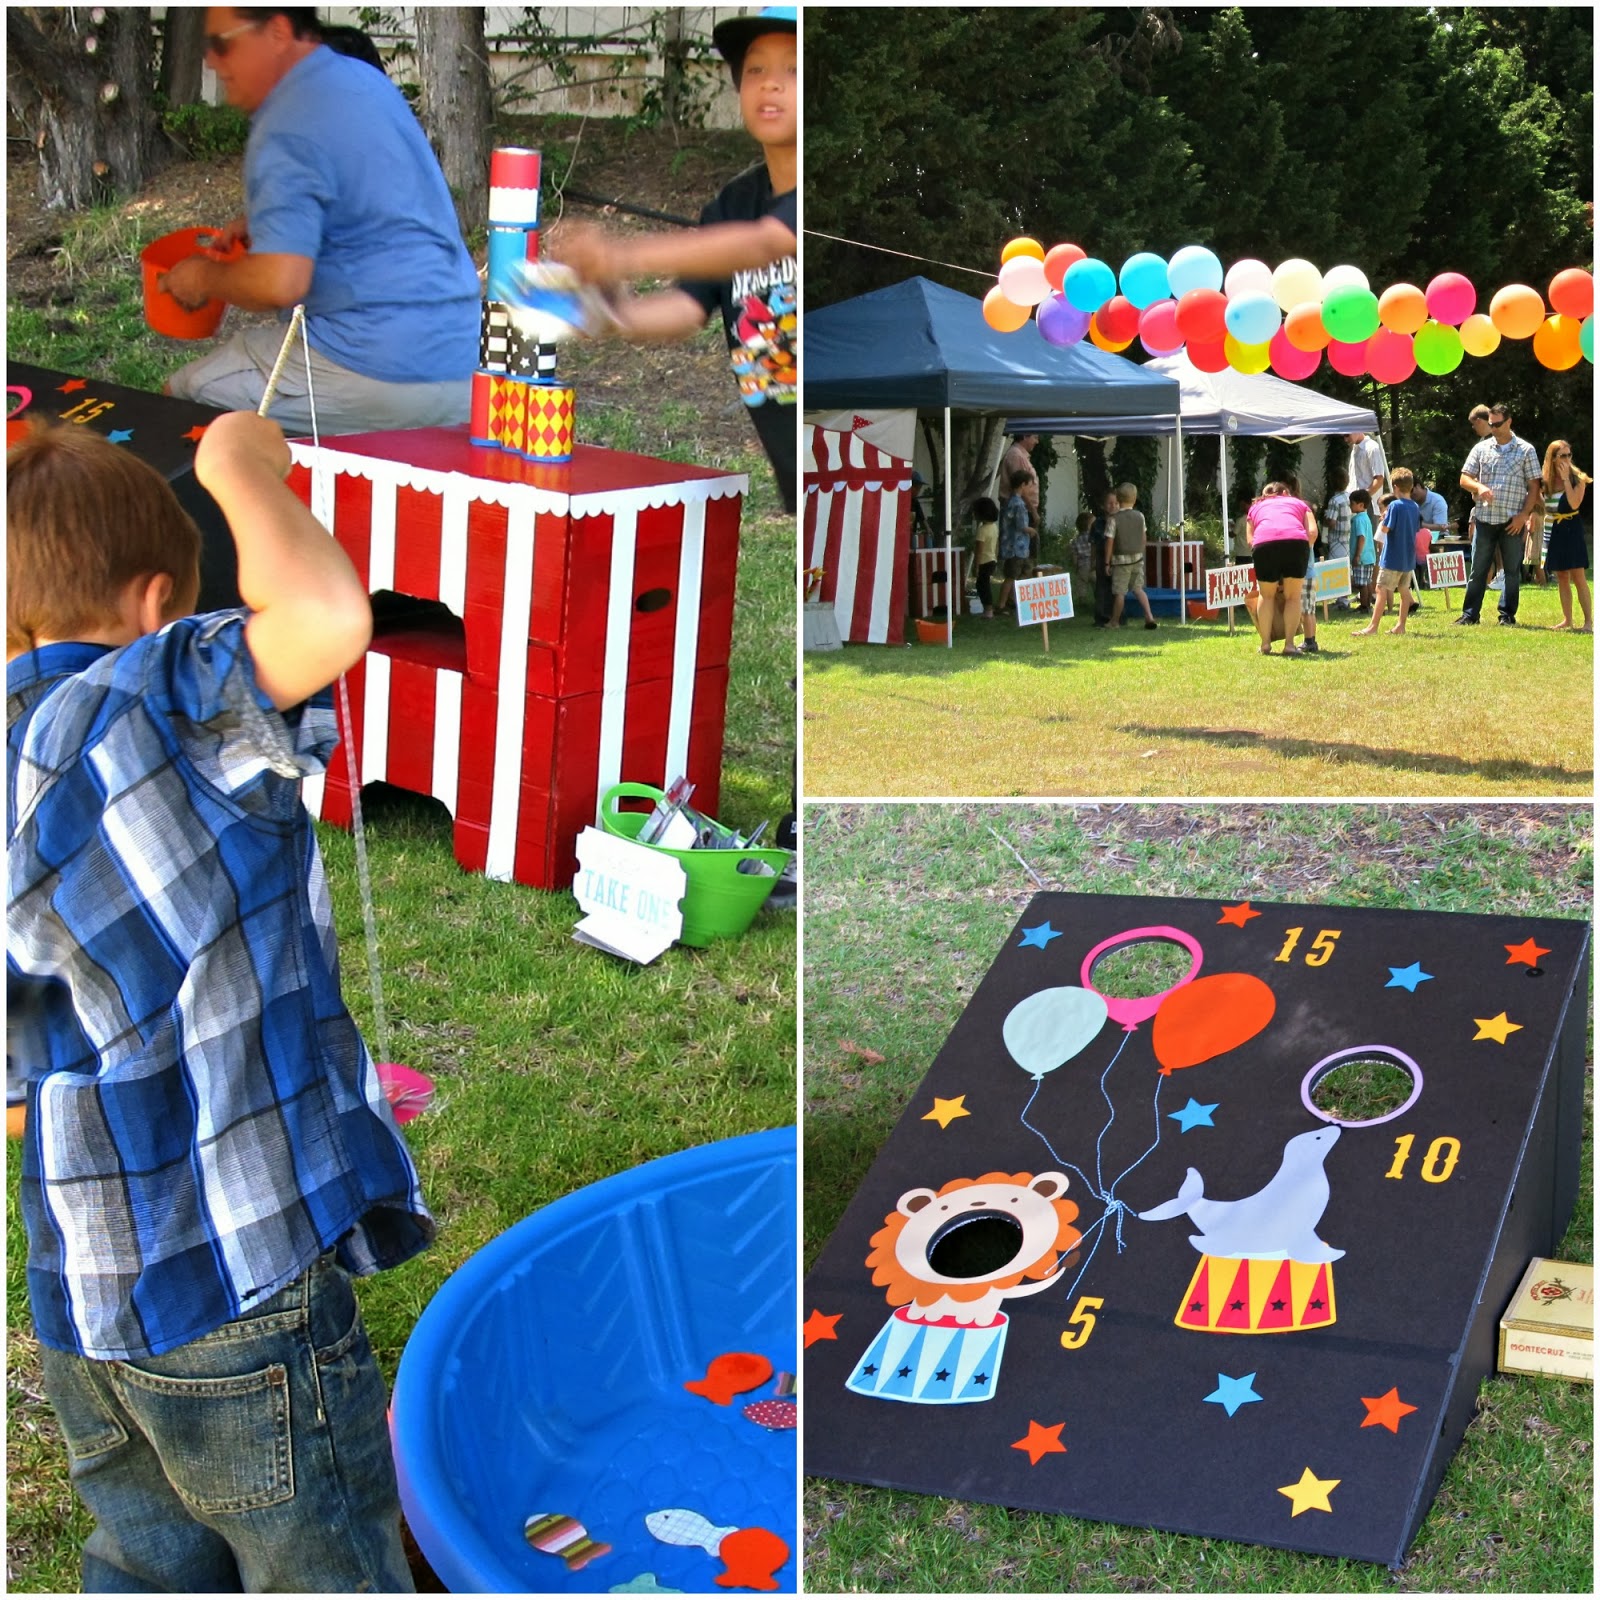 Sandusky-Register-homemadebyjill: preschool carnival party